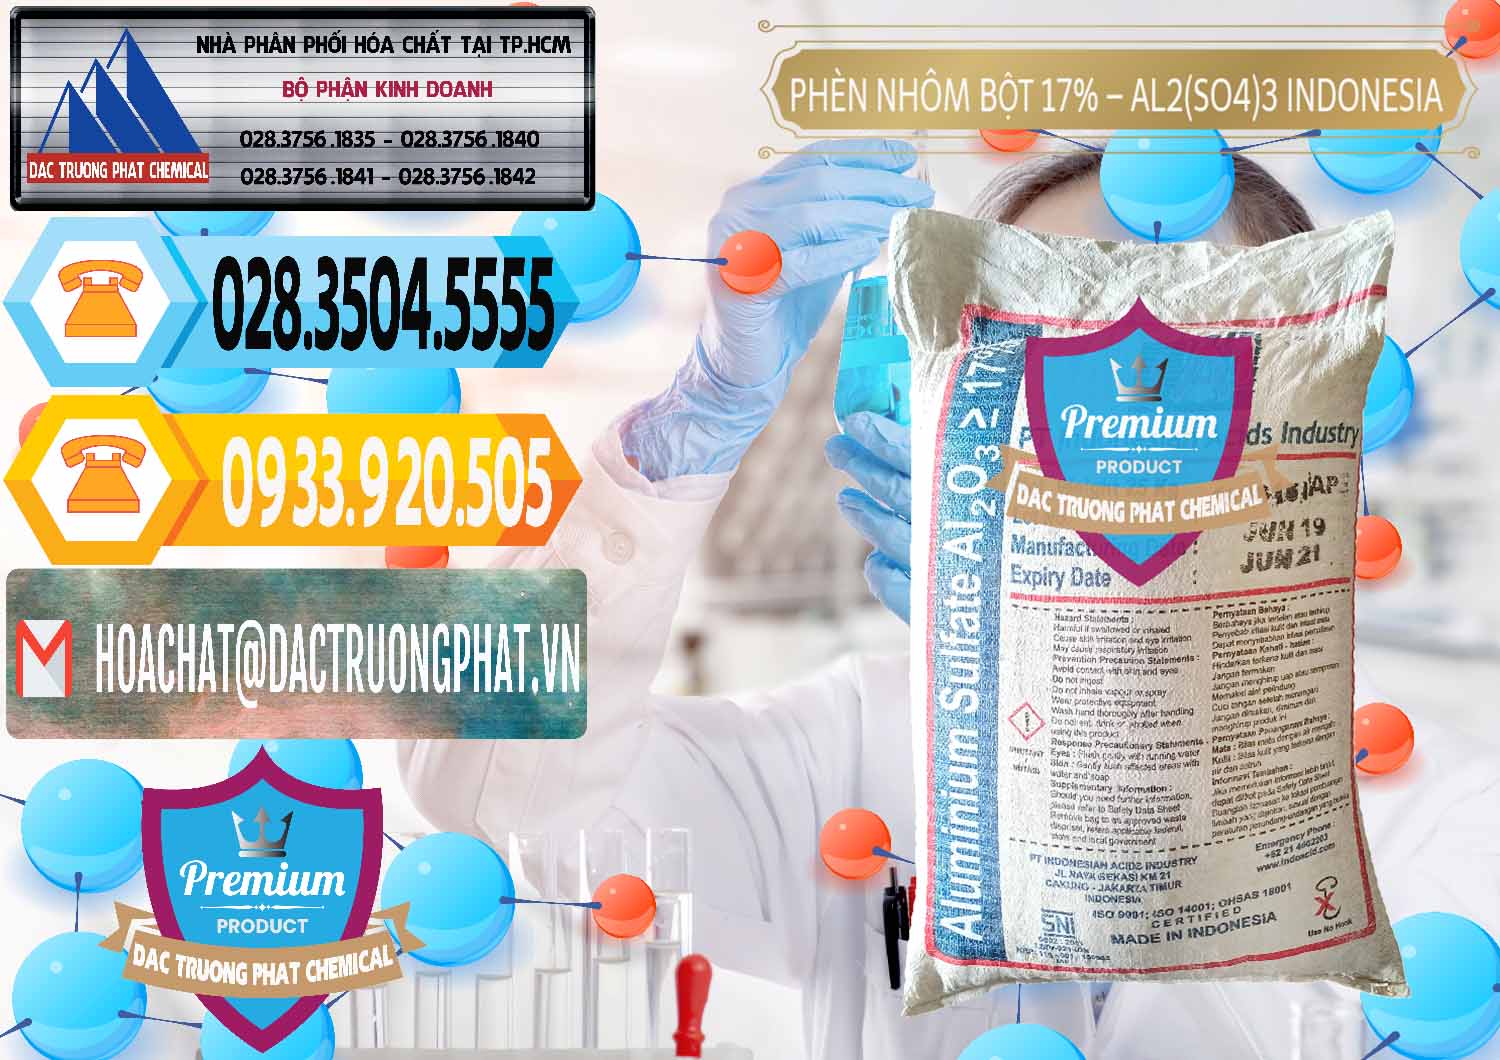 Công ty cung cấp _ bán Phèn Nhôm Bột - Al2(SO4)3 17% bao 25kg Indonesia - 0114 - Công ty chuyên nhập khẩu - phân phối hóa chất tại TP.HCM - hoachattayrua.net